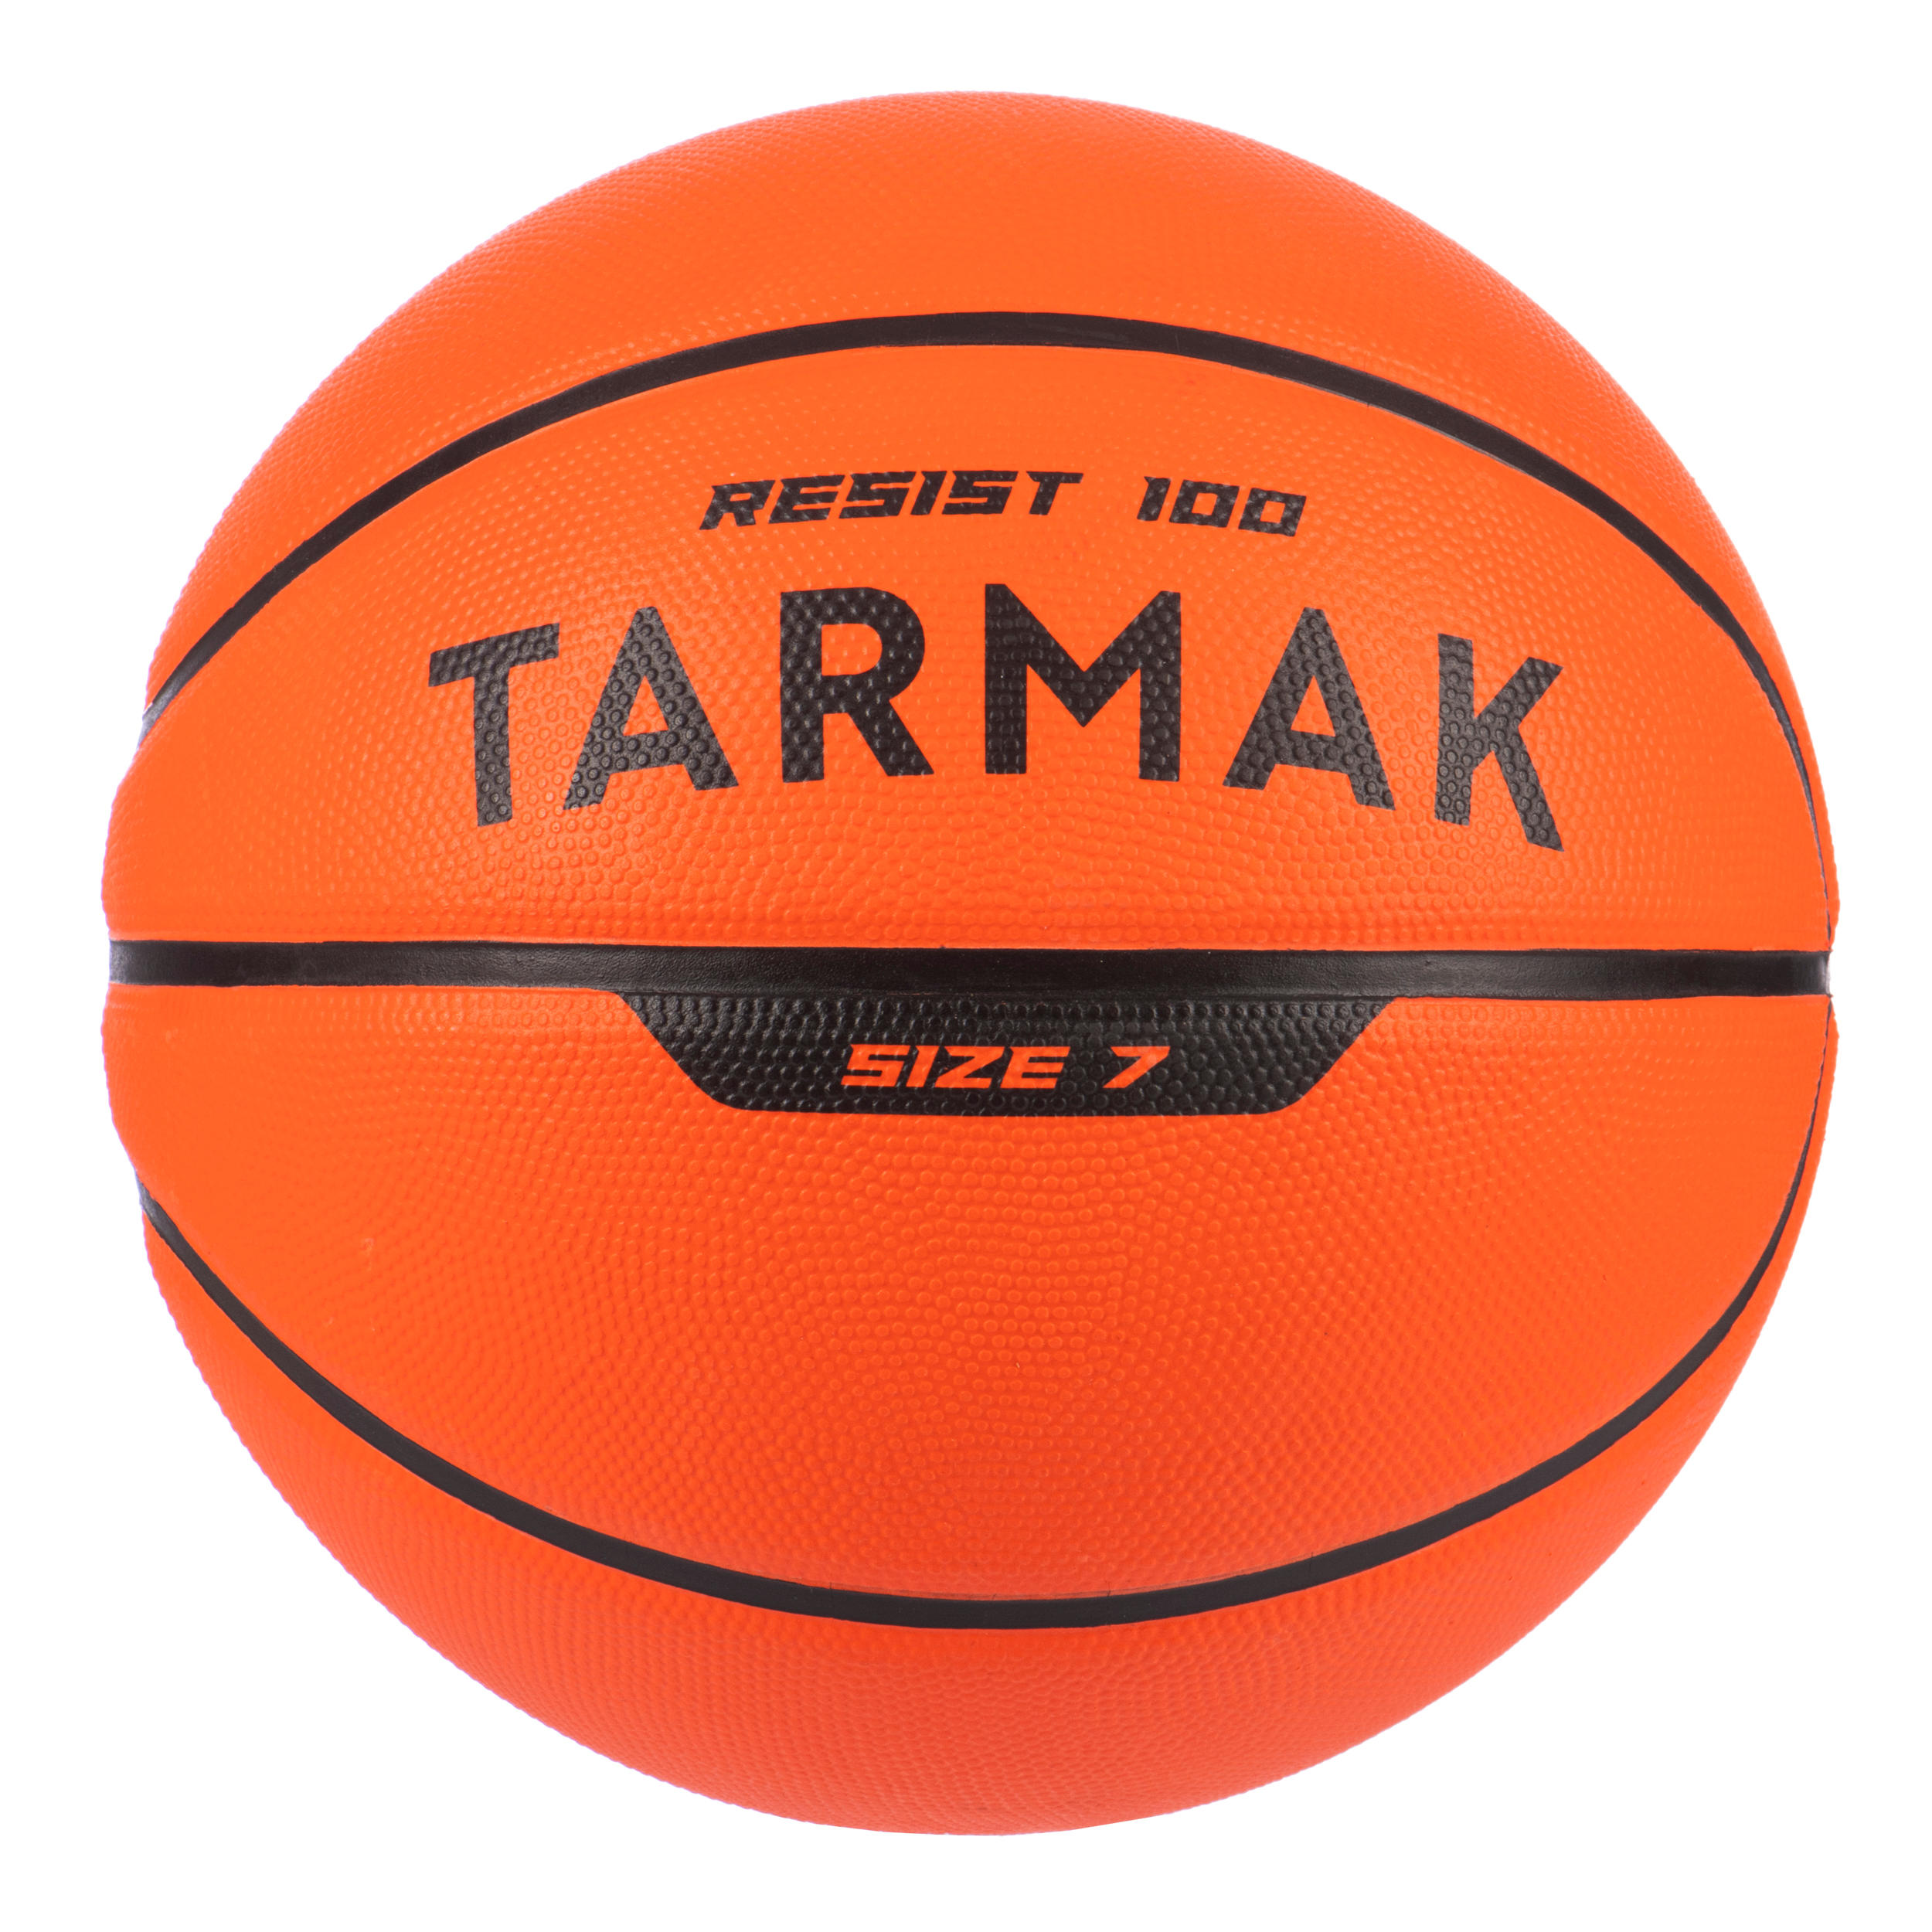 [ส่งฟรี ] ลูกบาสเกตบอล? ทนทานเป็นพิเศษสำหรับผู้ใหญ่ออกแบบสำหรับผู้เล่นมือใหม่รุ่น R100 เบอร์ 7 (สีส้ม) มาตราฐาน FIBA Basketball Ball ? Kids'/Adult Size 7 Basketball R100 - Orange. ลูกบาสเกตบอล 6 7